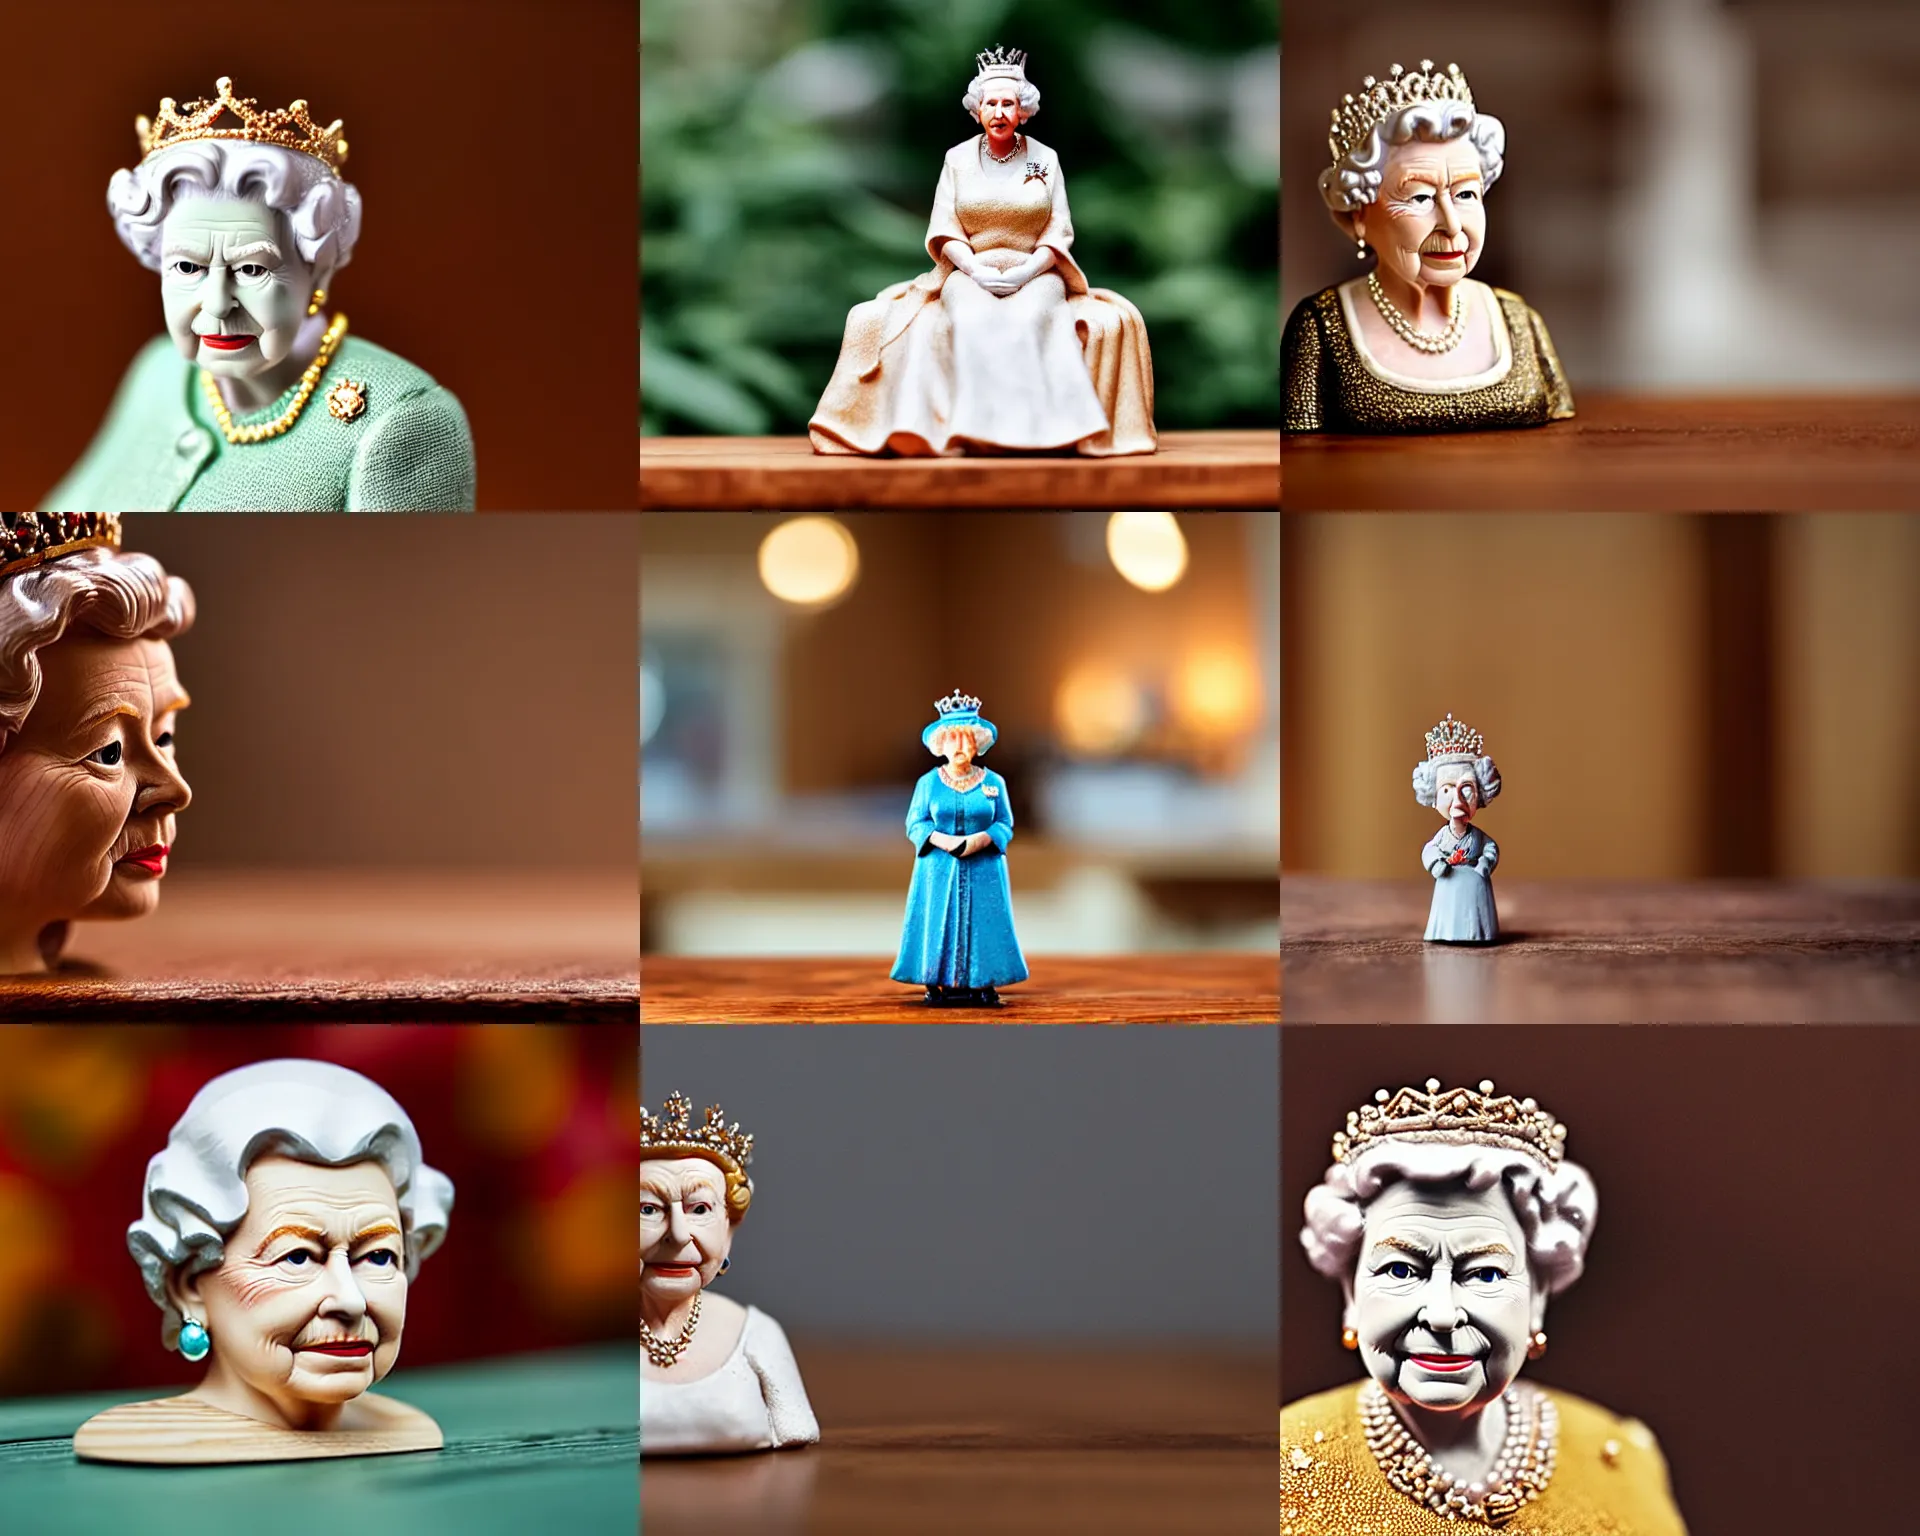 Prompt: queen elizabeth figurine by Pixar sad bokeh on wooden table.